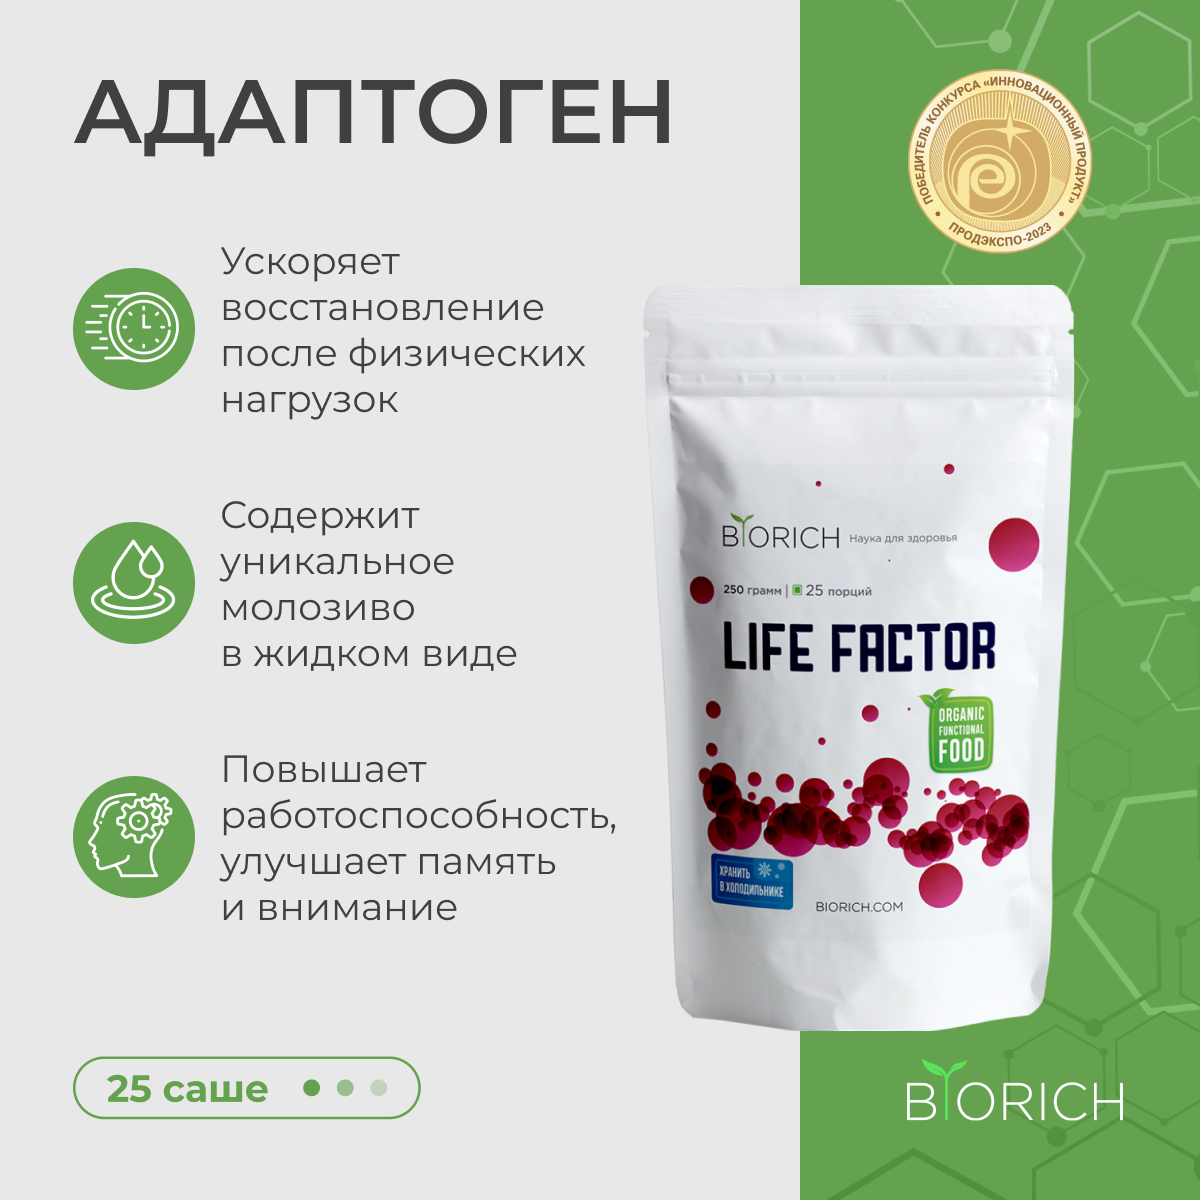 Адаптоген Biorich Life Factor для поддержания микрофлоры кишечника, саше, 25 шт